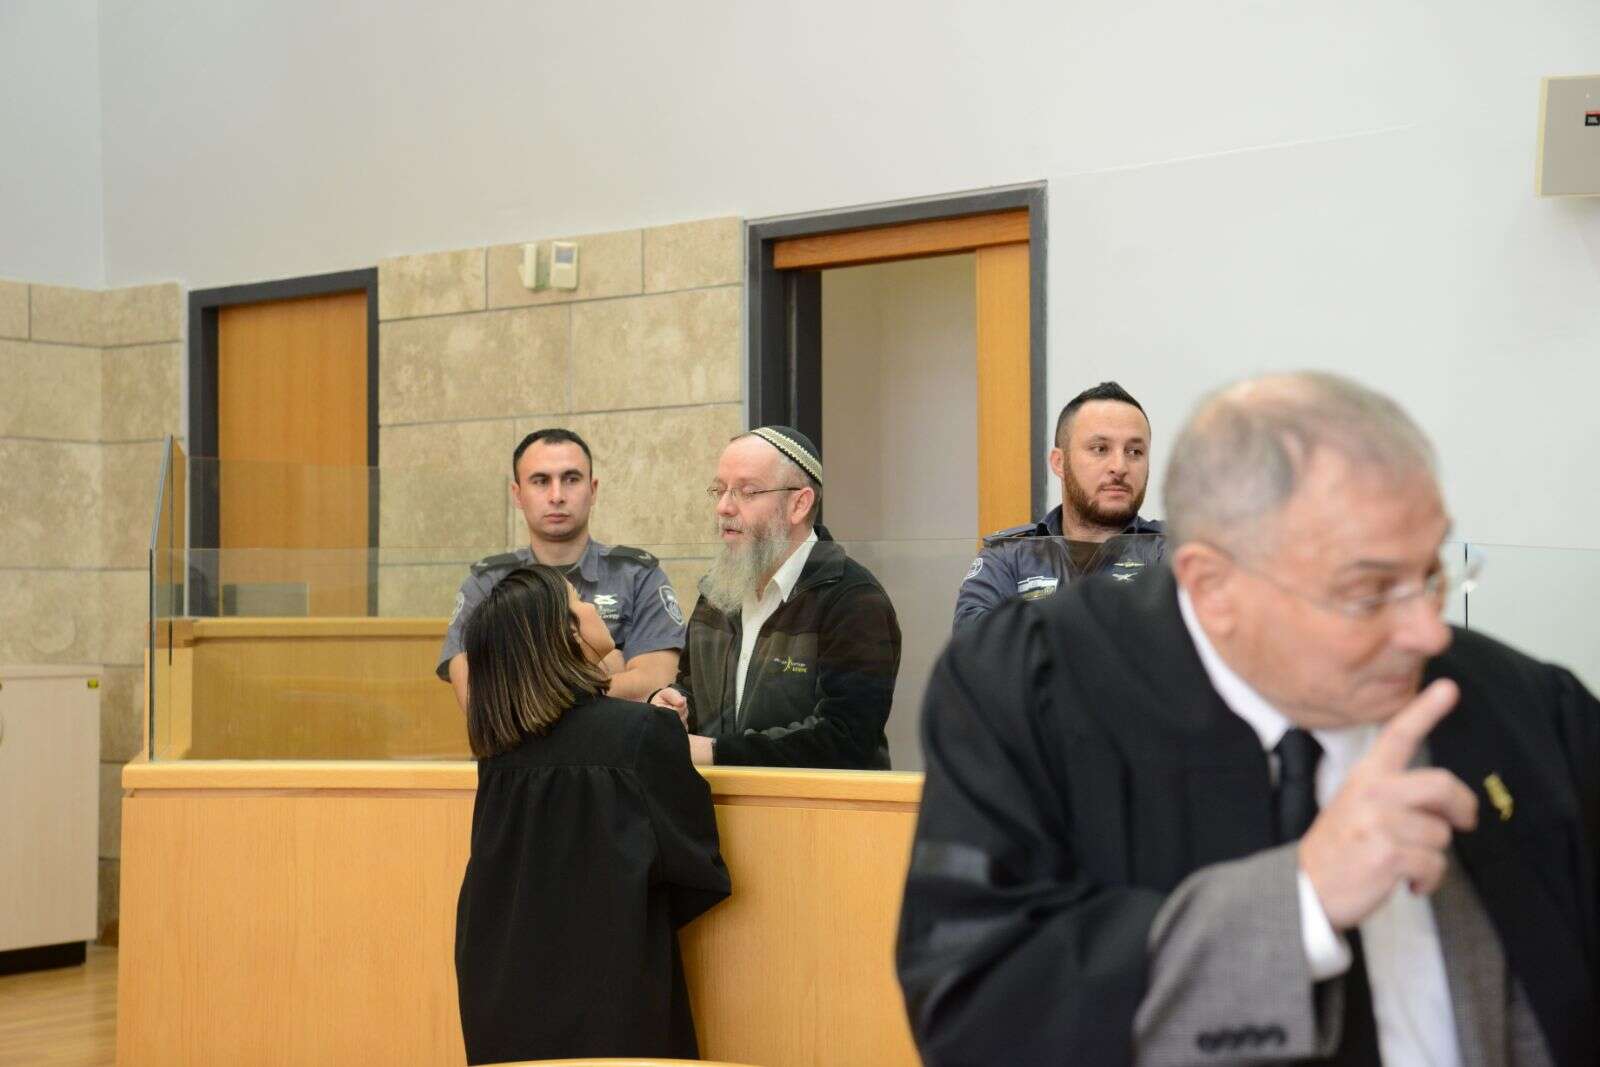 עזרא שיינברג נשלח לכלא: ''הנשים כועסות מאוד'' - מקור ראשון